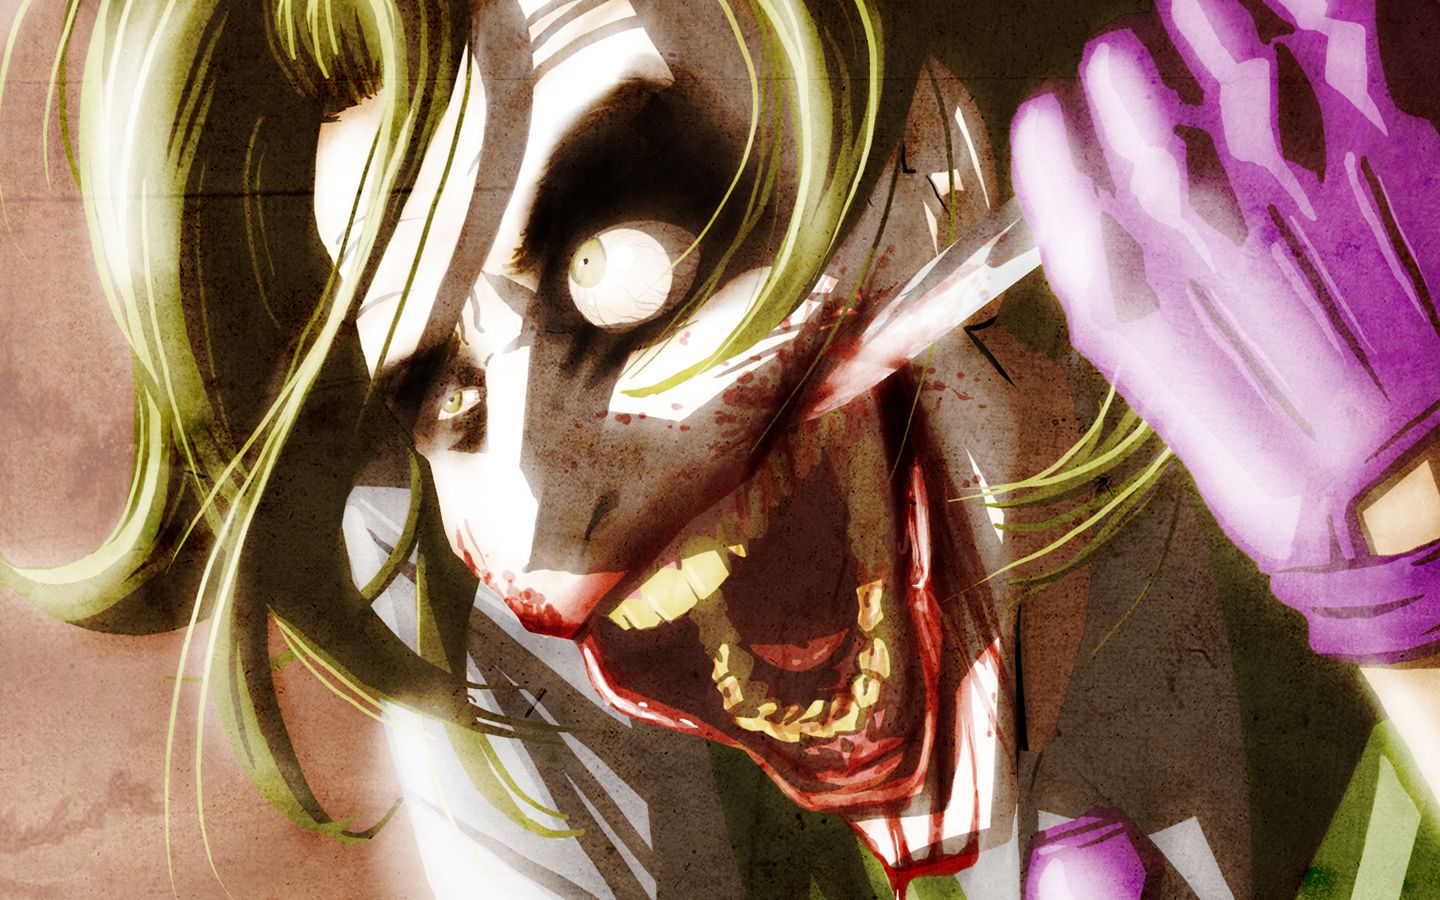 Free download Cool Joker Smile Wallpaper Image Wallpaper